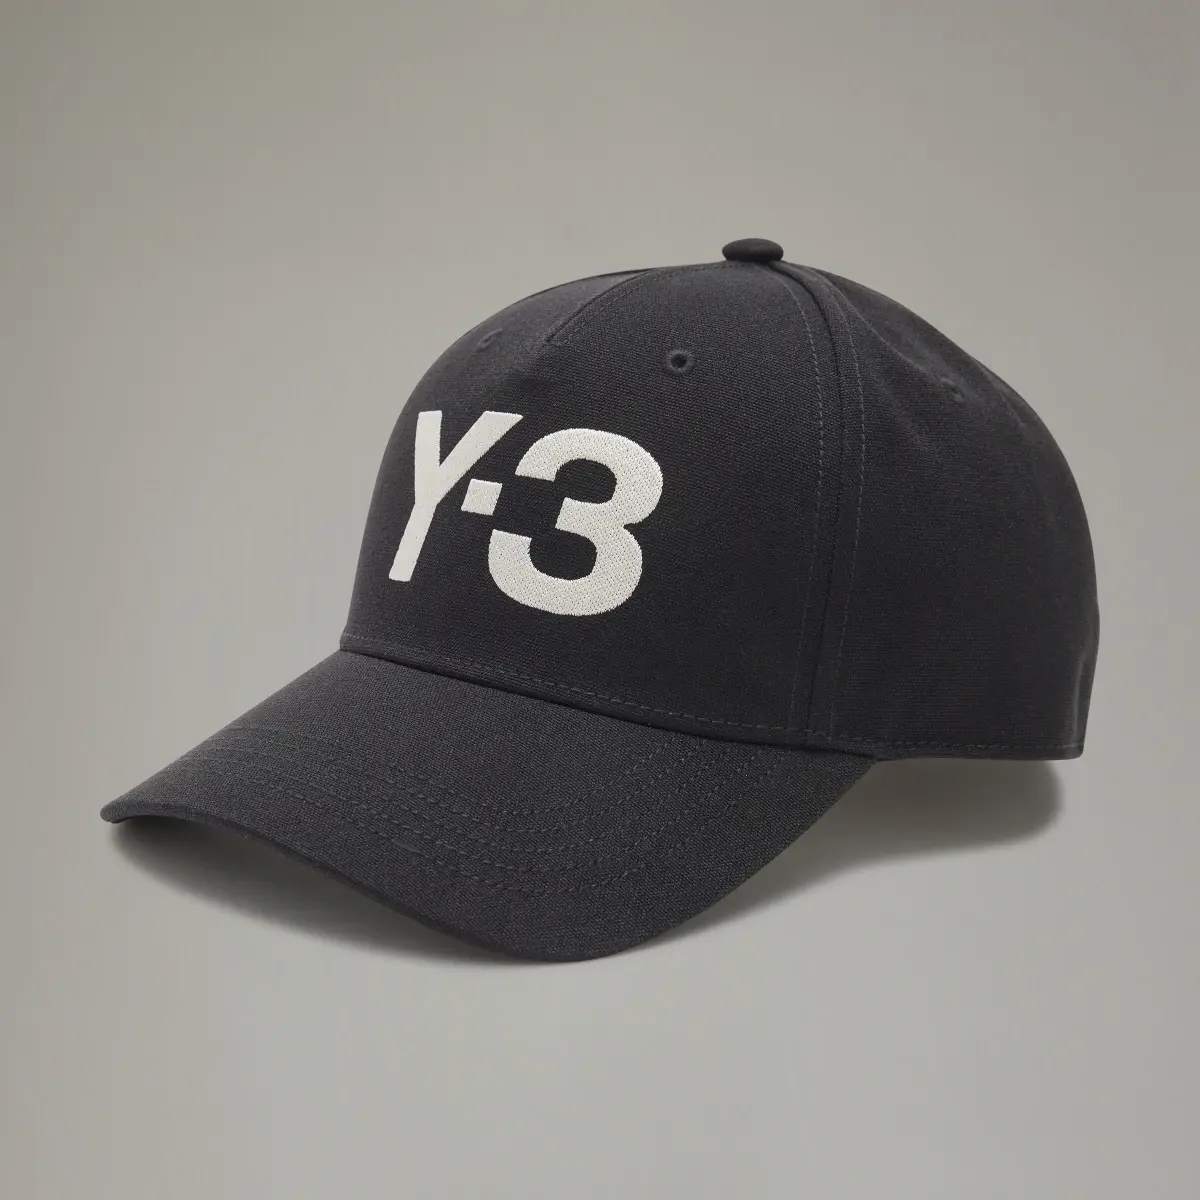 Adidas Y-3 Logo Cap. 2